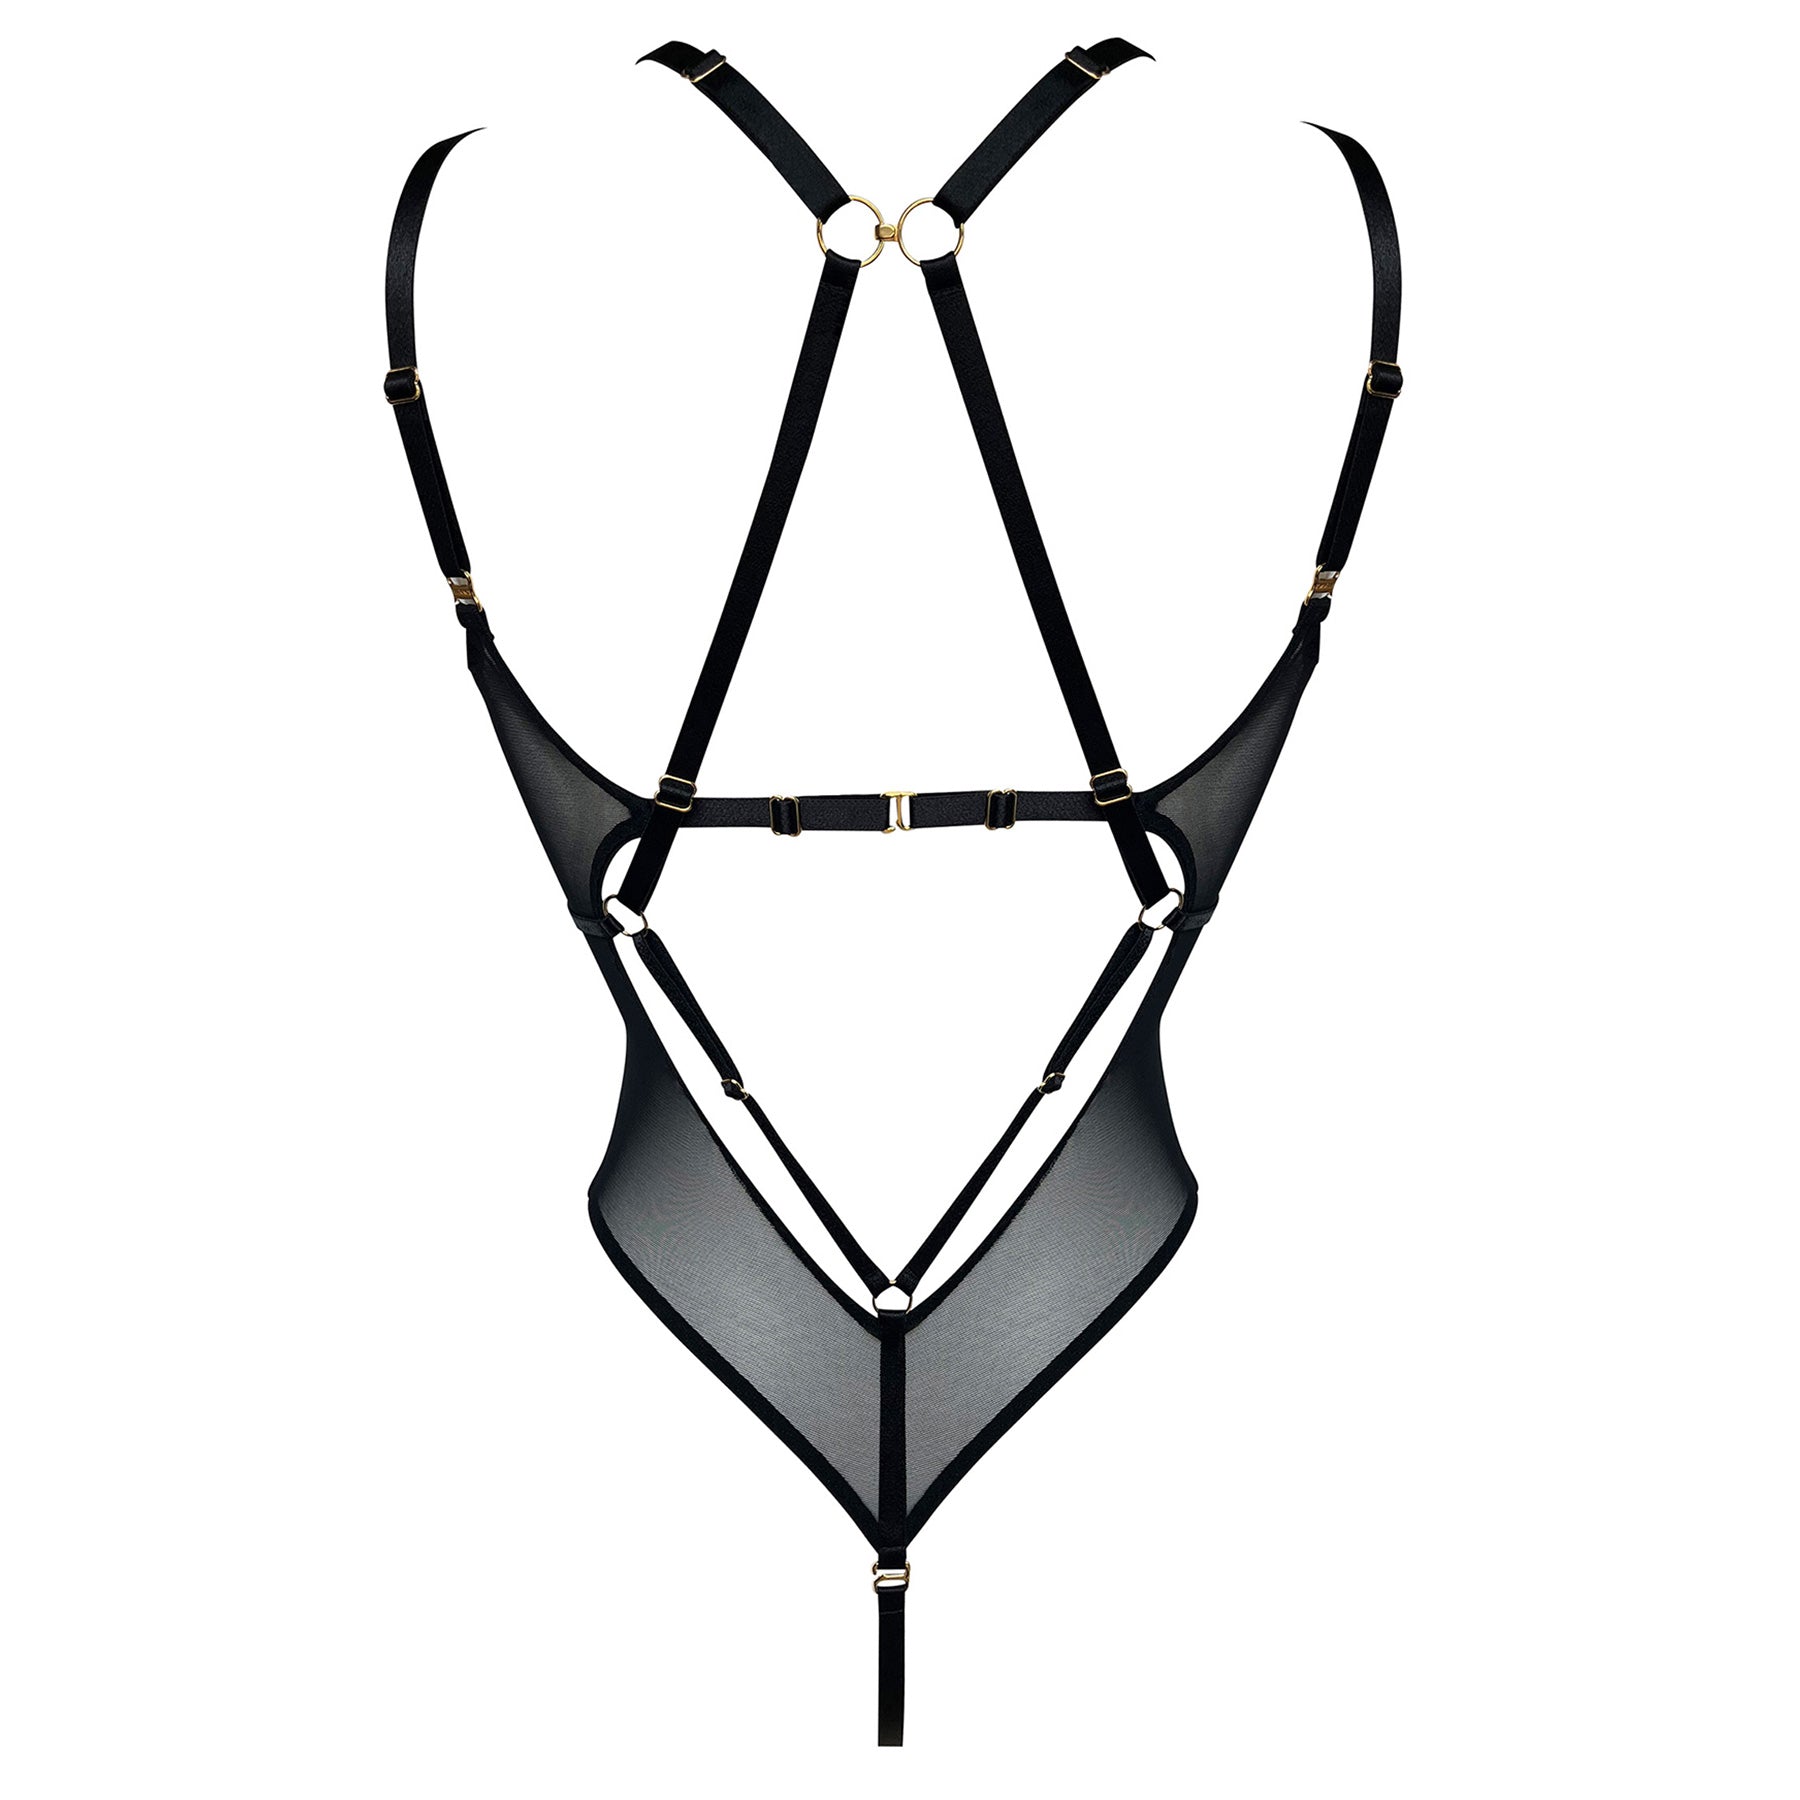 Vero harness body by Bordelle - black